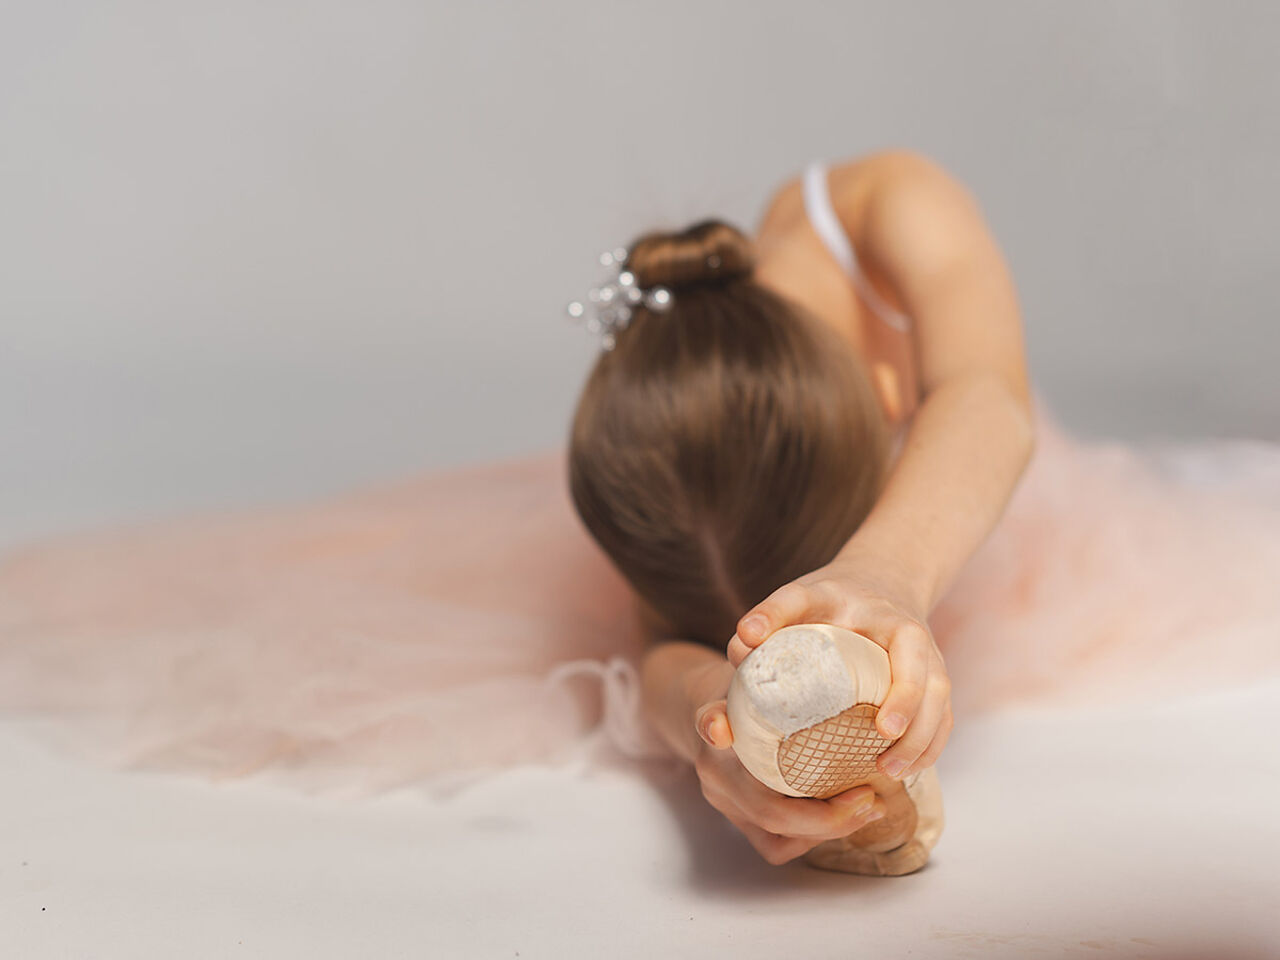 バレエの衣装を着た女の子が柔軟体操をしている画像